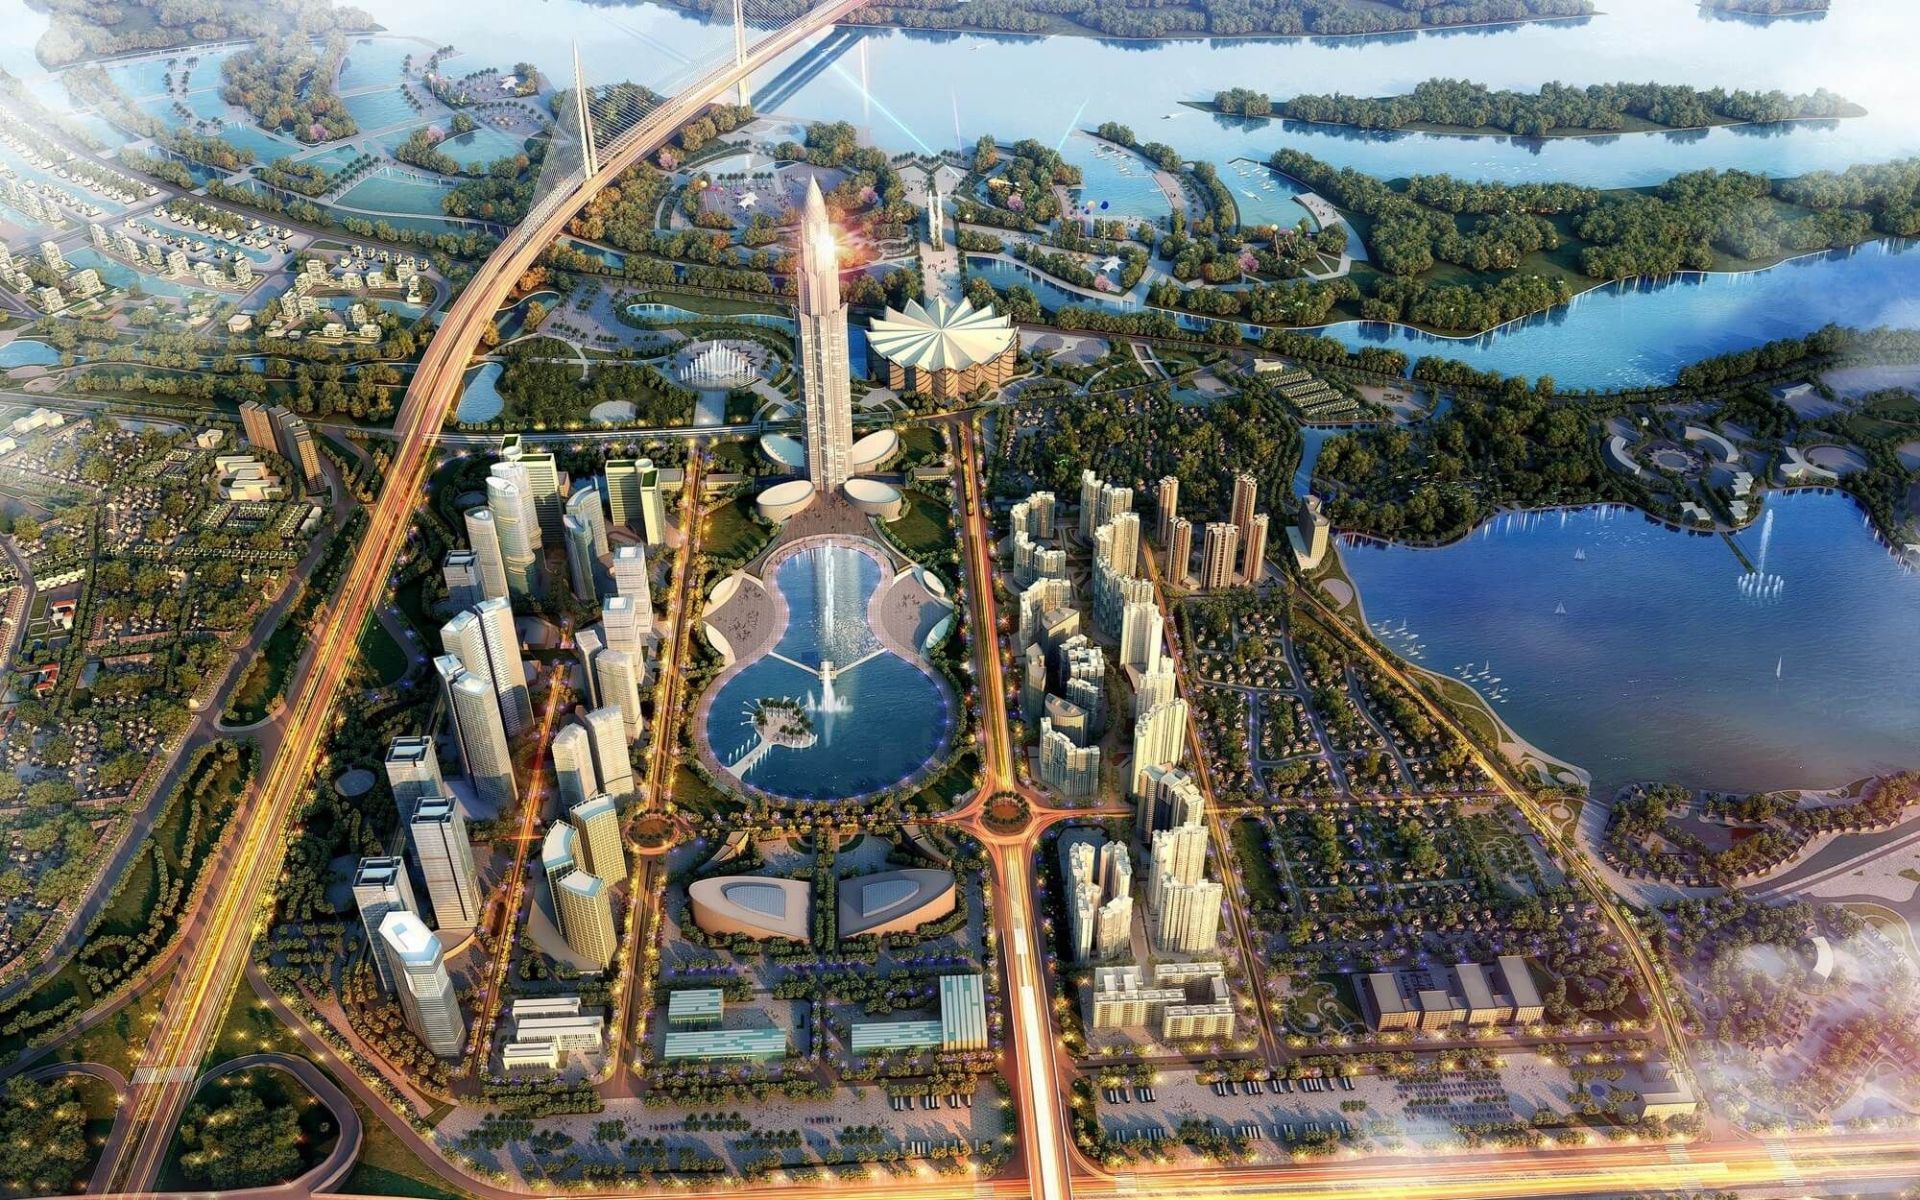 Dự án Thành phố Thông minh 4,2 tỷ USD ở Đông Anh sắp được phê duyệt điều chỉnh quy hoạch 1/500                                    